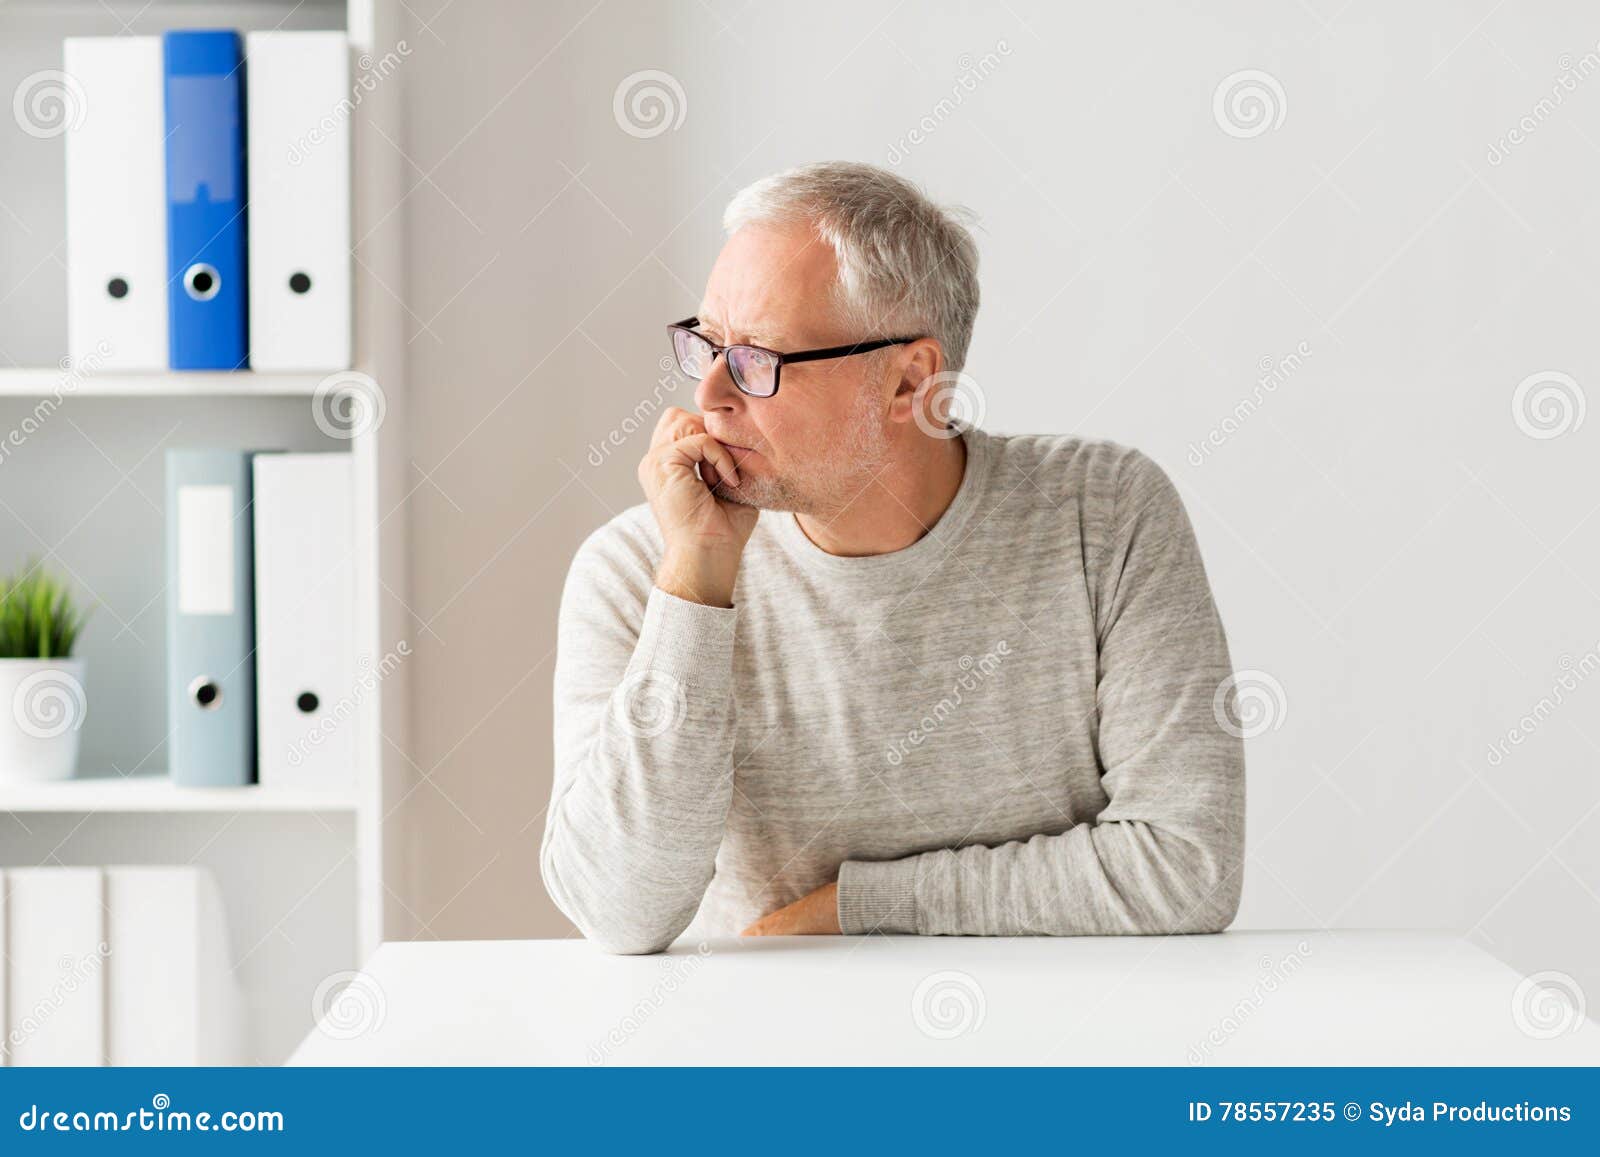 В скромно обставленном кабинете сидел пожилой человек. Пожилой мужчина за столом. Пожилой мужчина сидит за столом. Старик сидит за столом. Пожилой мужчина в офисе.